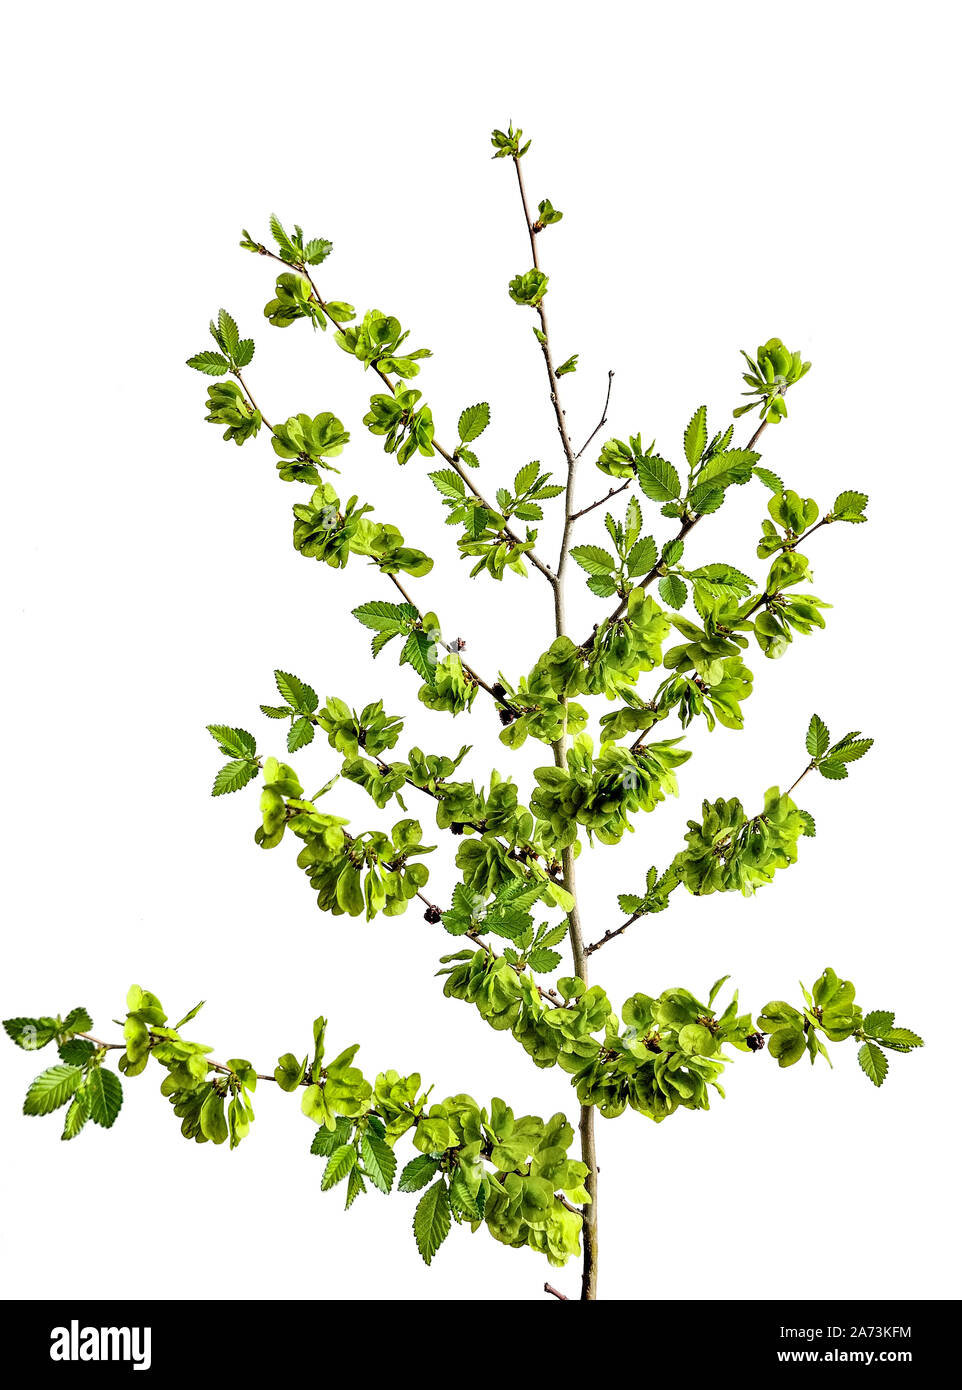 Frühling blühende grobe Ulme (Ulmus glabra), auf weißem Hintergrund. Blühende Pflanze mit grünen unreifen geflügelten Samen Stockfoto